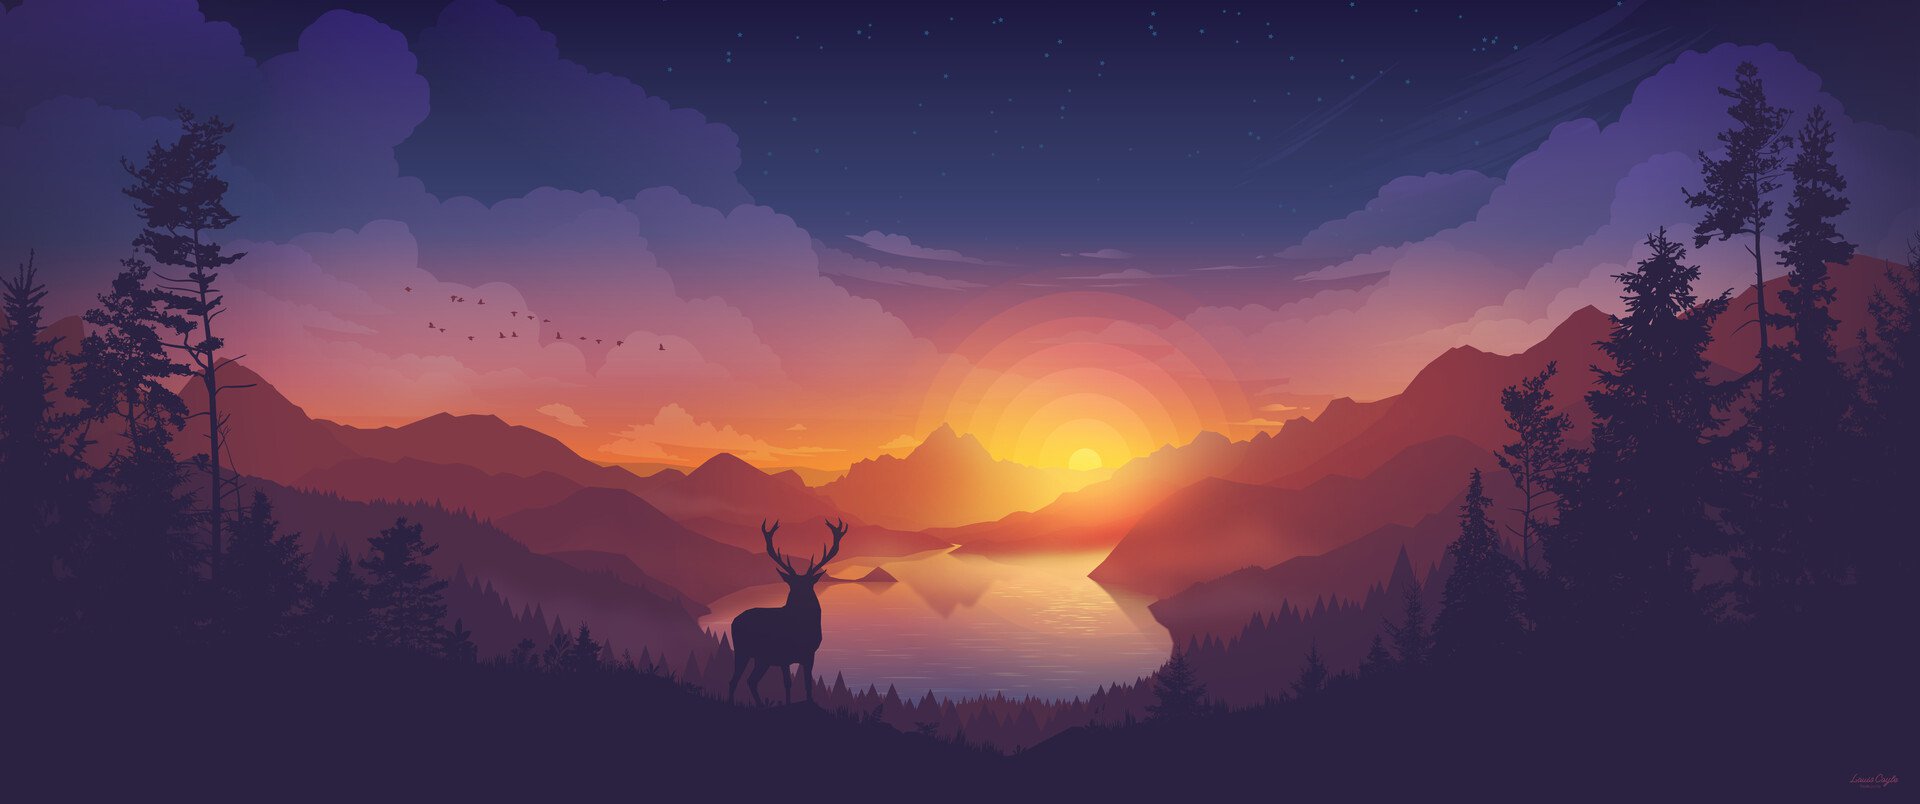 Landscape Valley Lake Forest Colorscape Sunset Elk Deer 1920x804